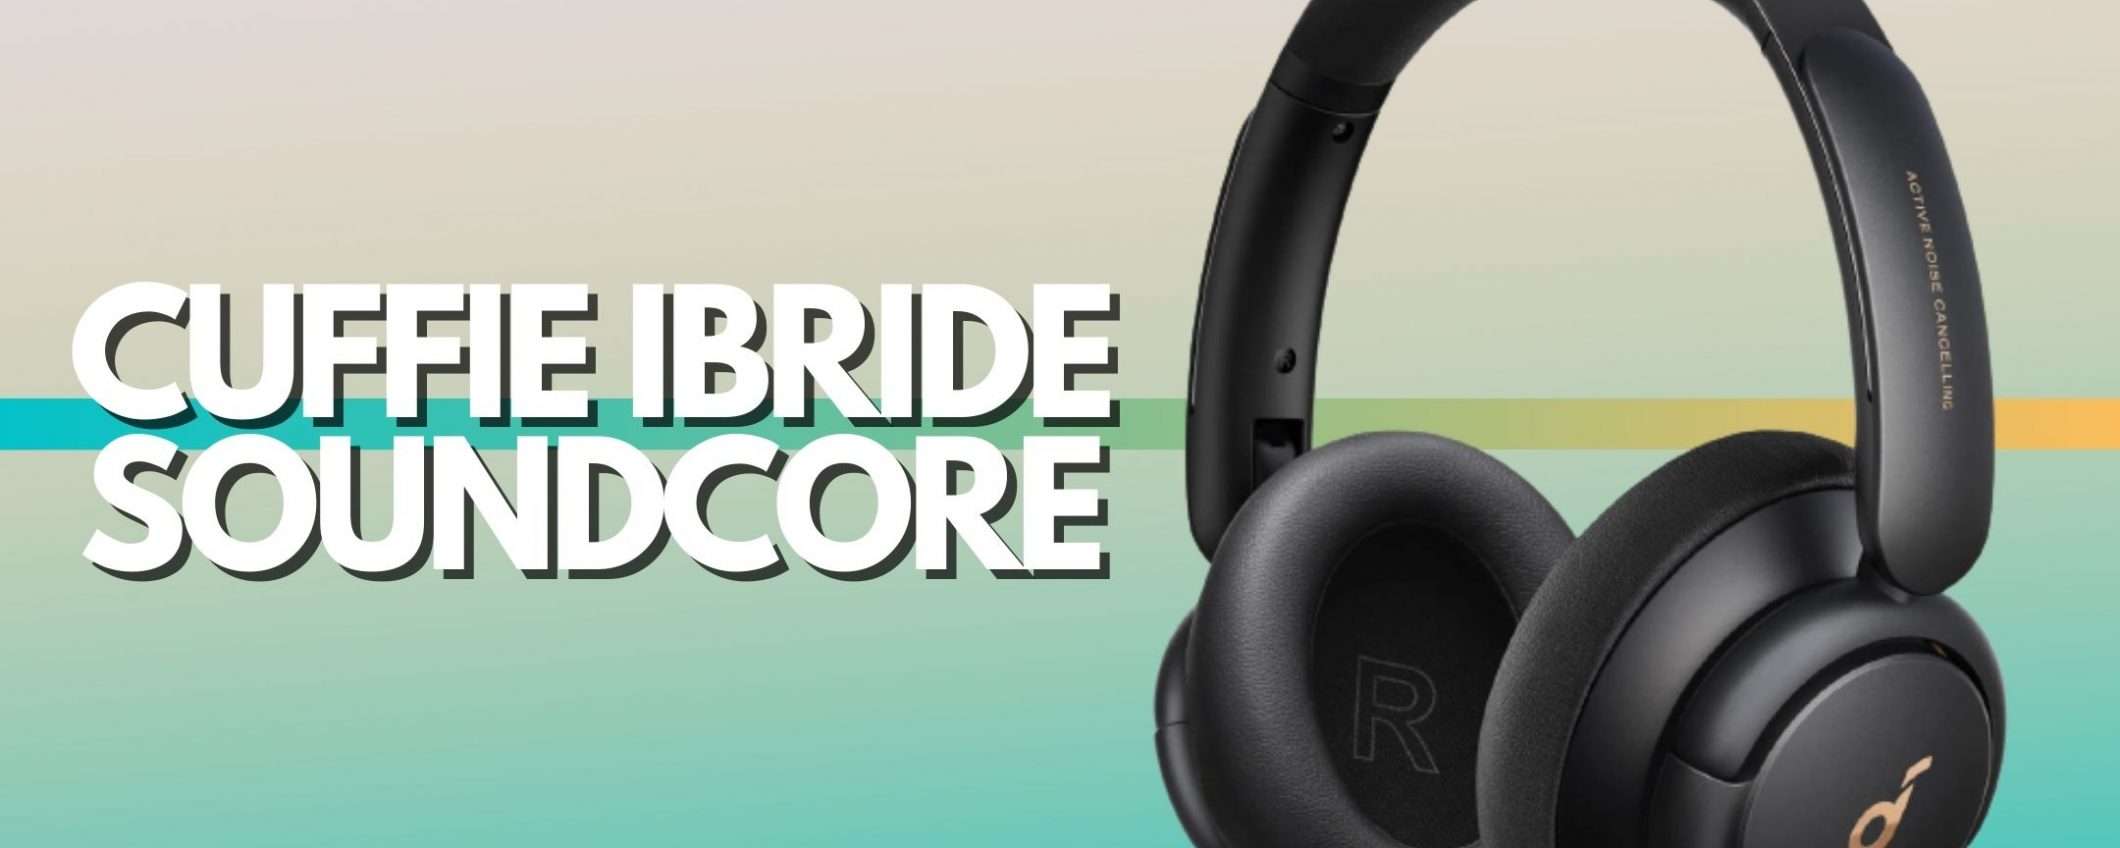 Cuffie ibride firmate Soundcore con coupon di 20€